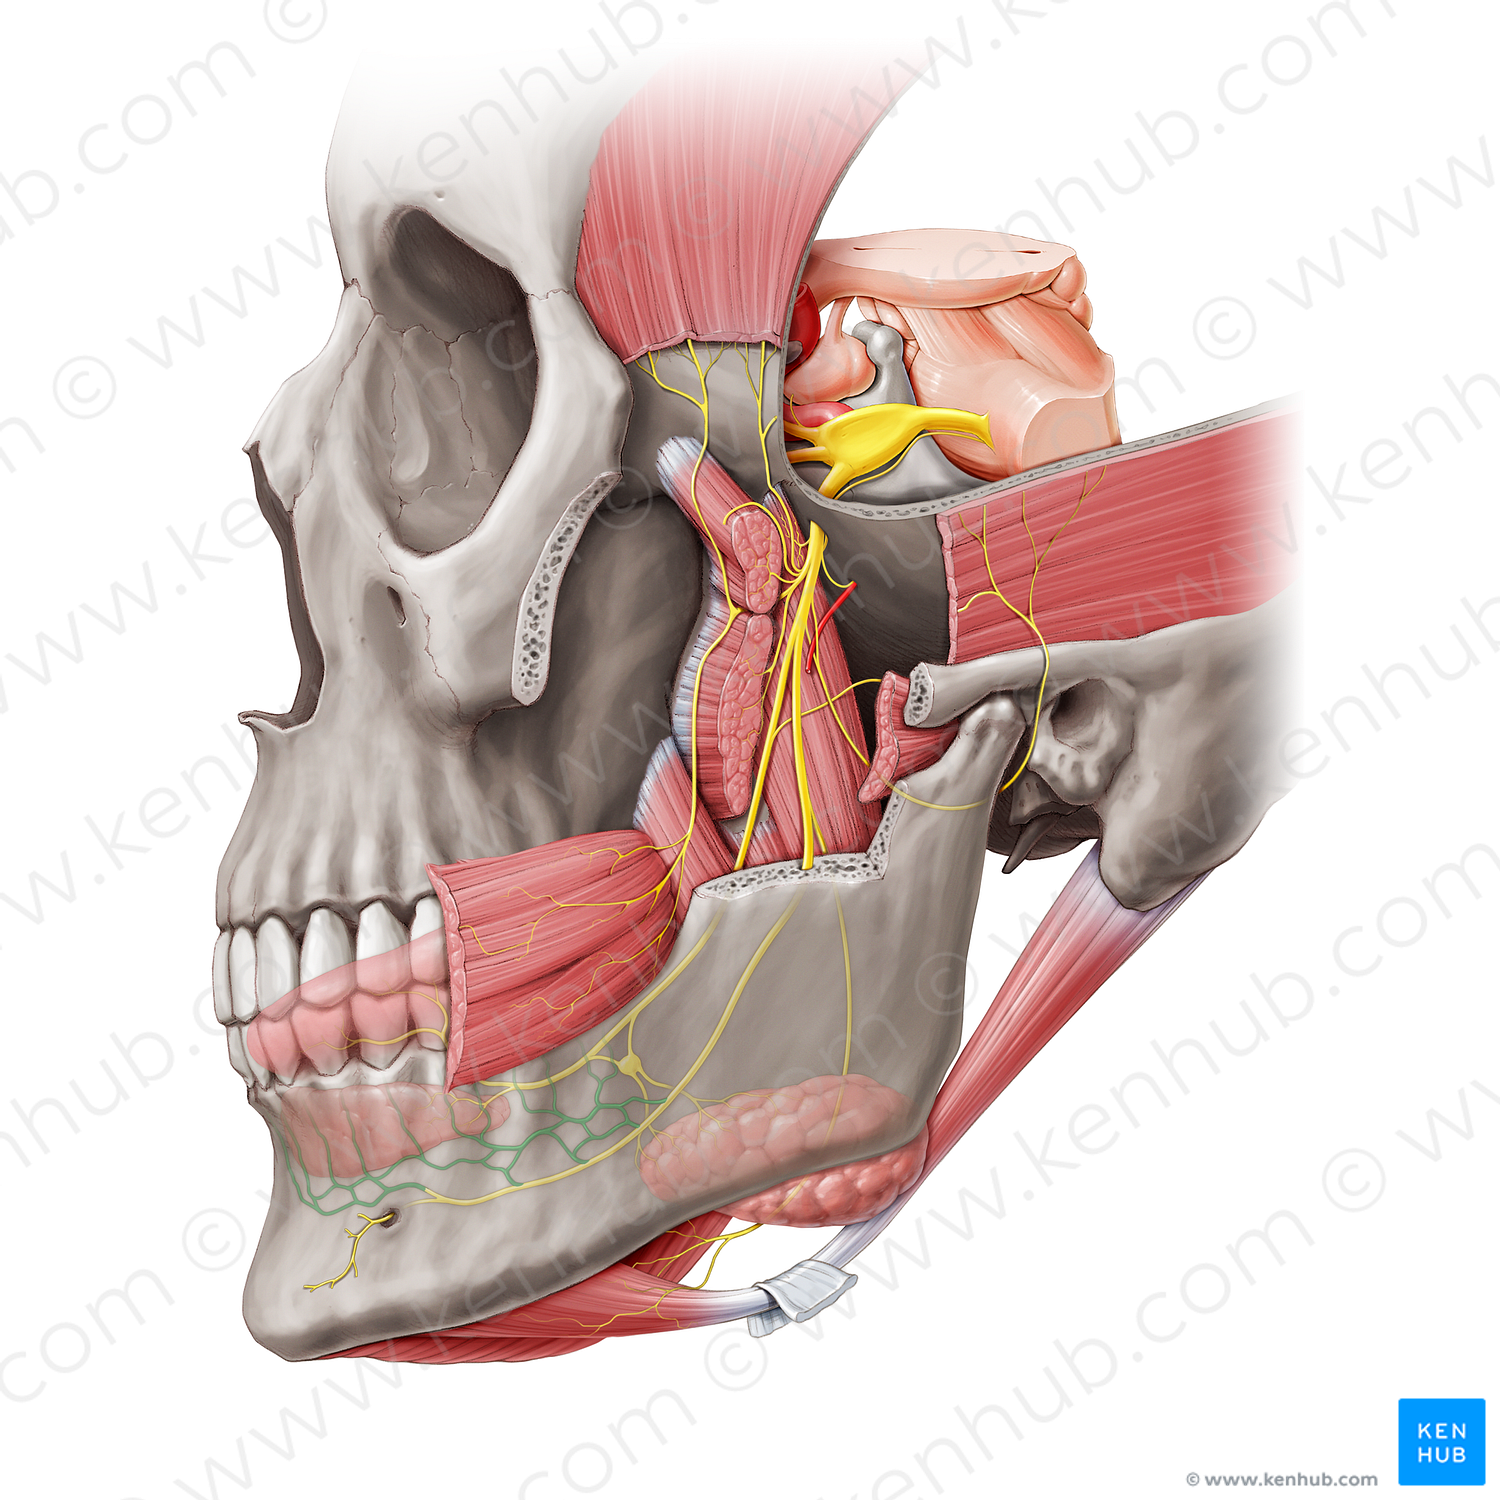 Inferior dental plexus (#20471)